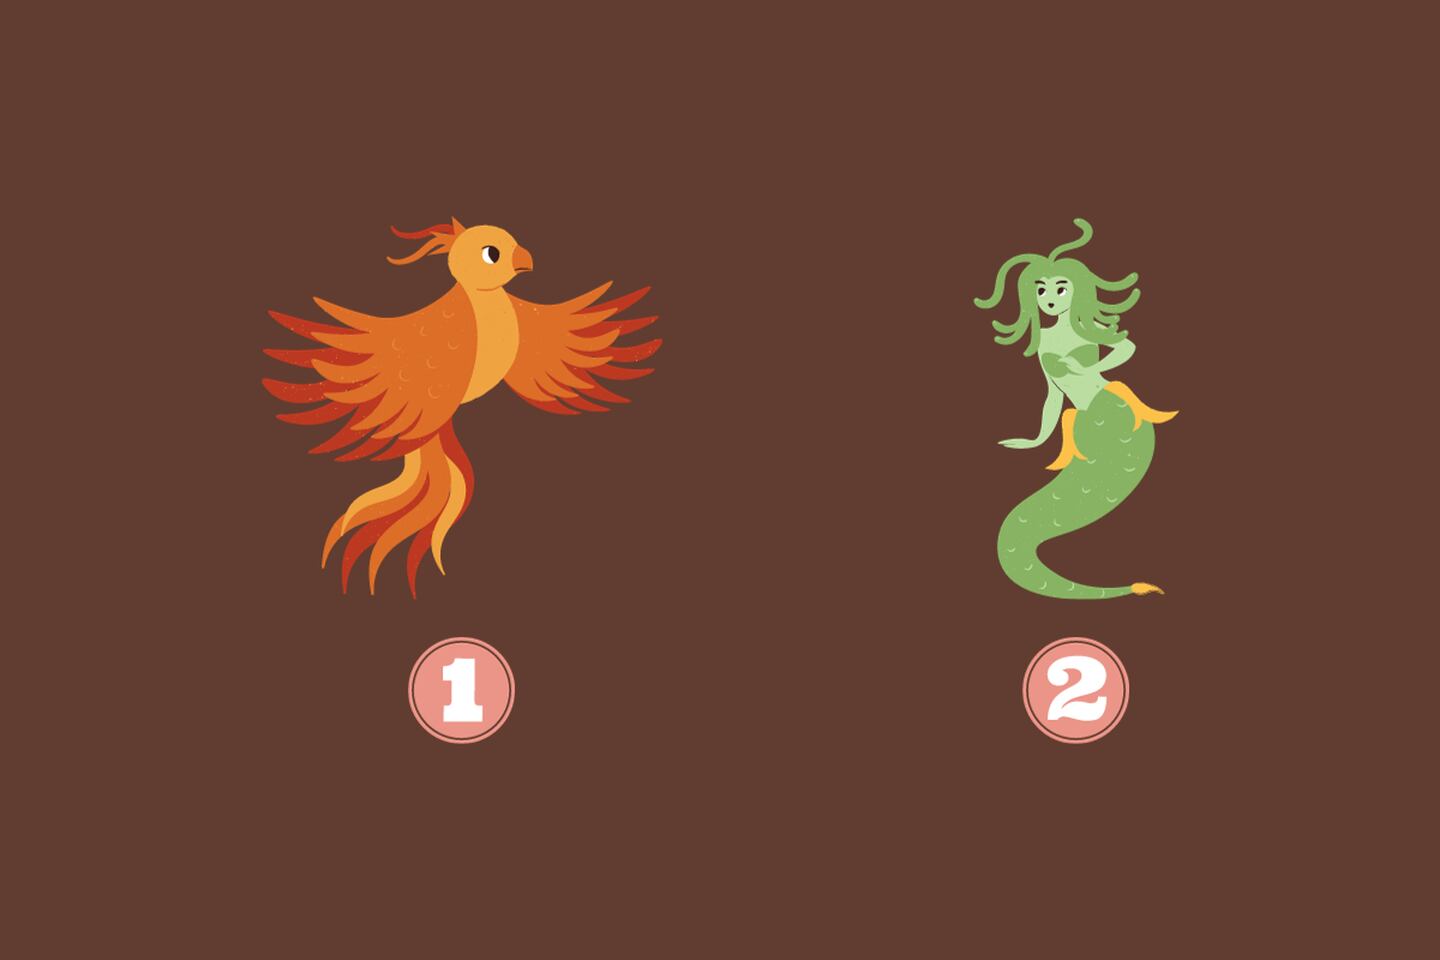 En este test de personalidad tienes dos opciones: un ave fénix y una sirena.